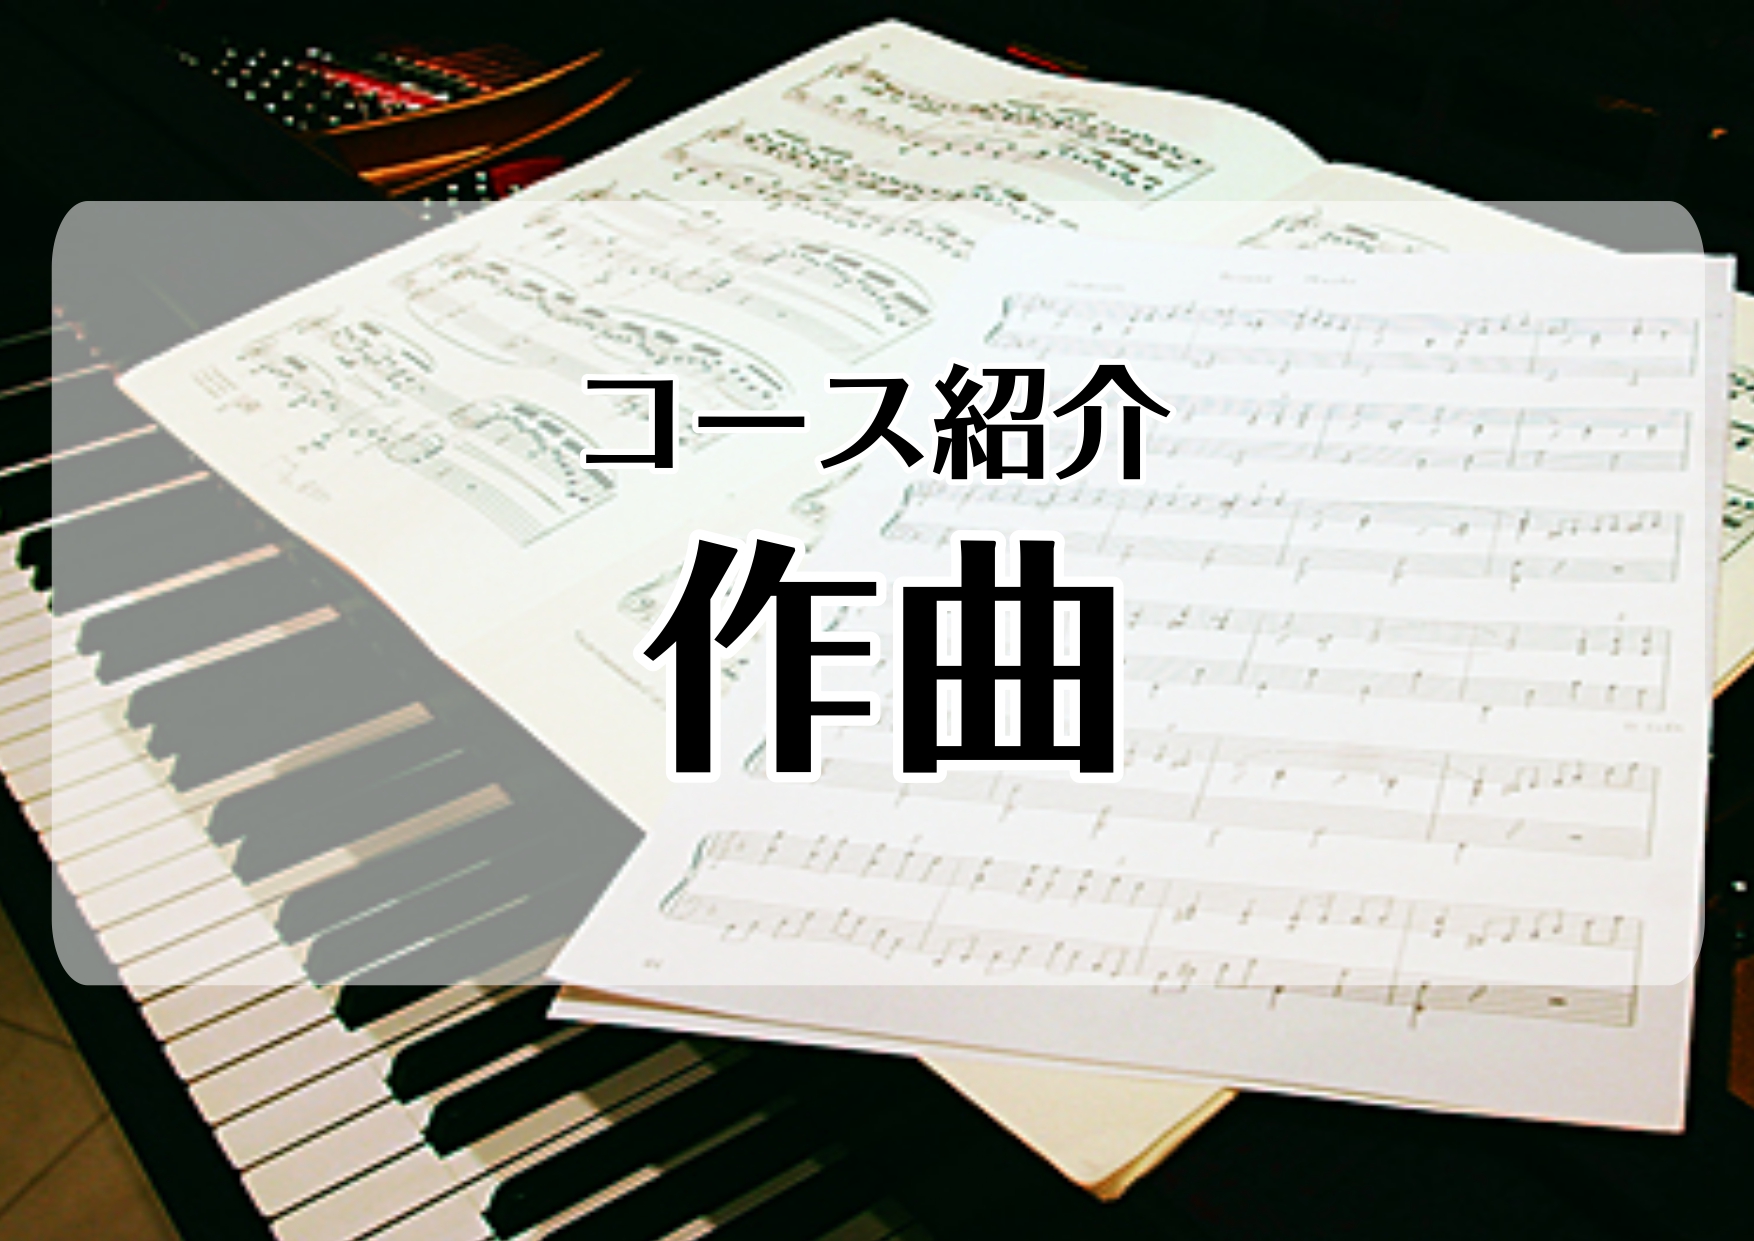 *[http://www.shimamura.co.jp/lesson/course/composition/:title=作曲コース] 作曲とは音楽という大海原を、自分の心の動きを頼りに航海するようなものです。]]そして作曲理論はその羅針盤です。]]きっと目指すところにたどり着く、心強い仲間になっ […]